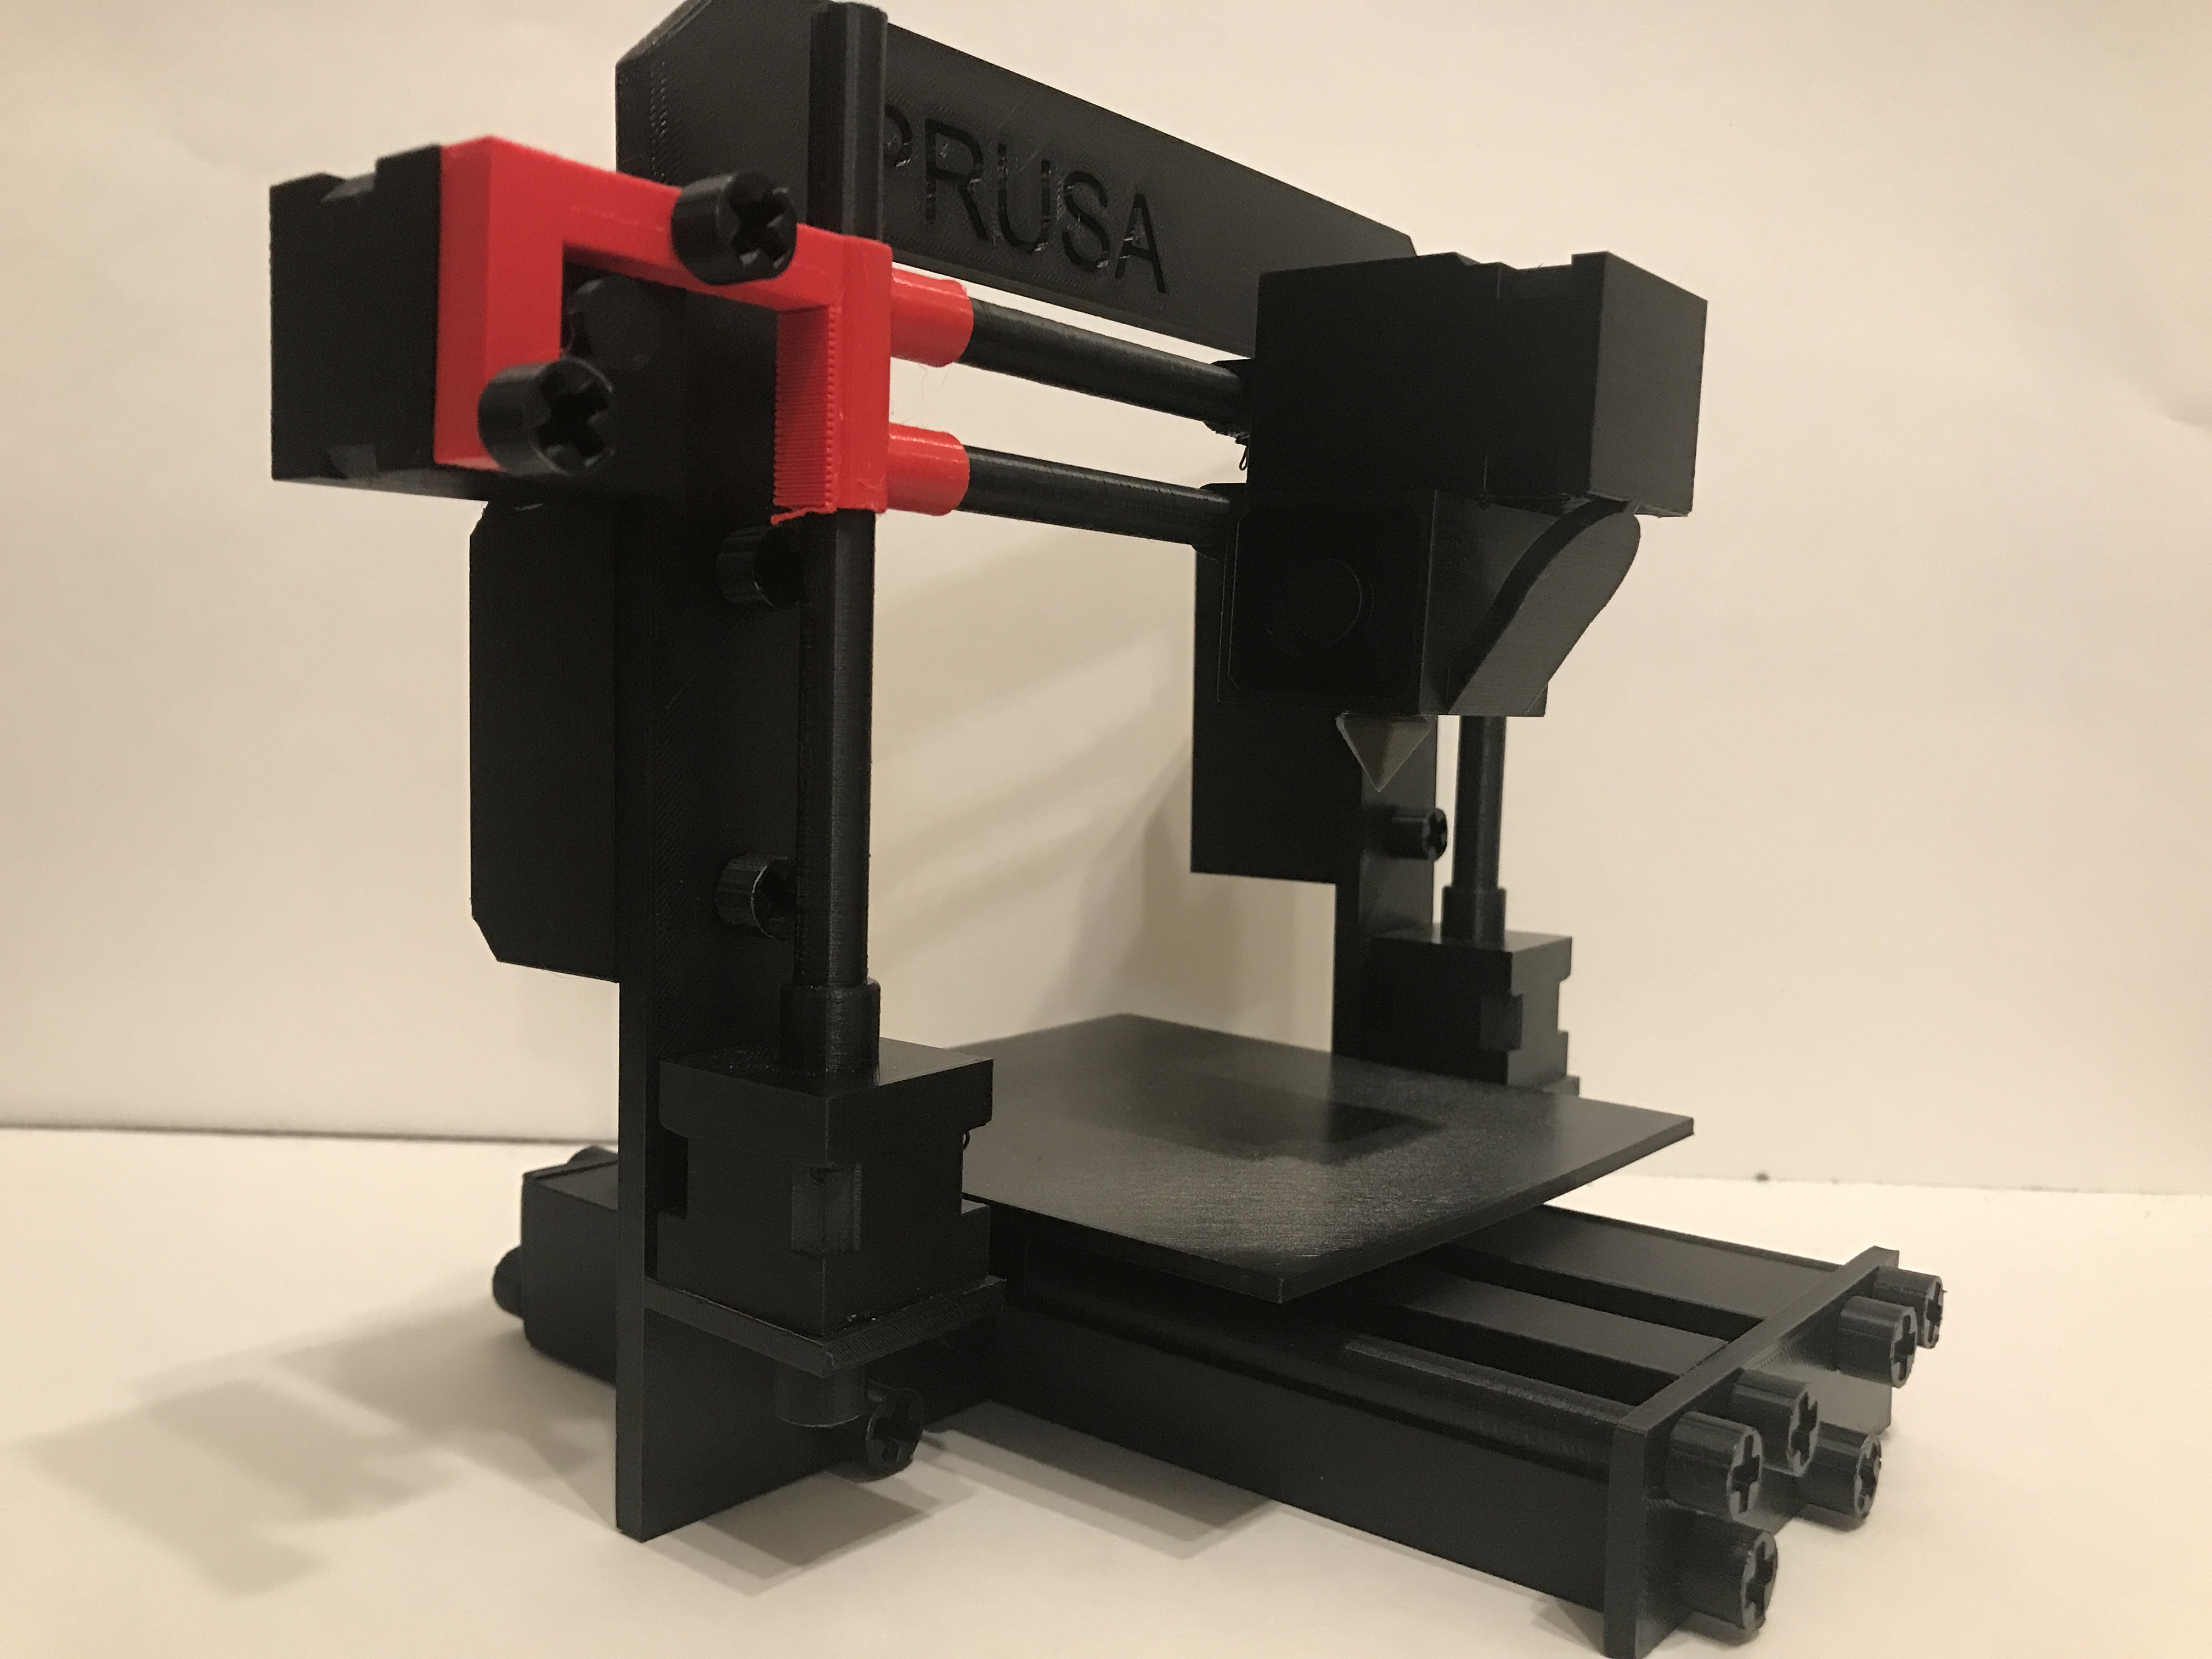 3D Printer Educational Kit for Kids